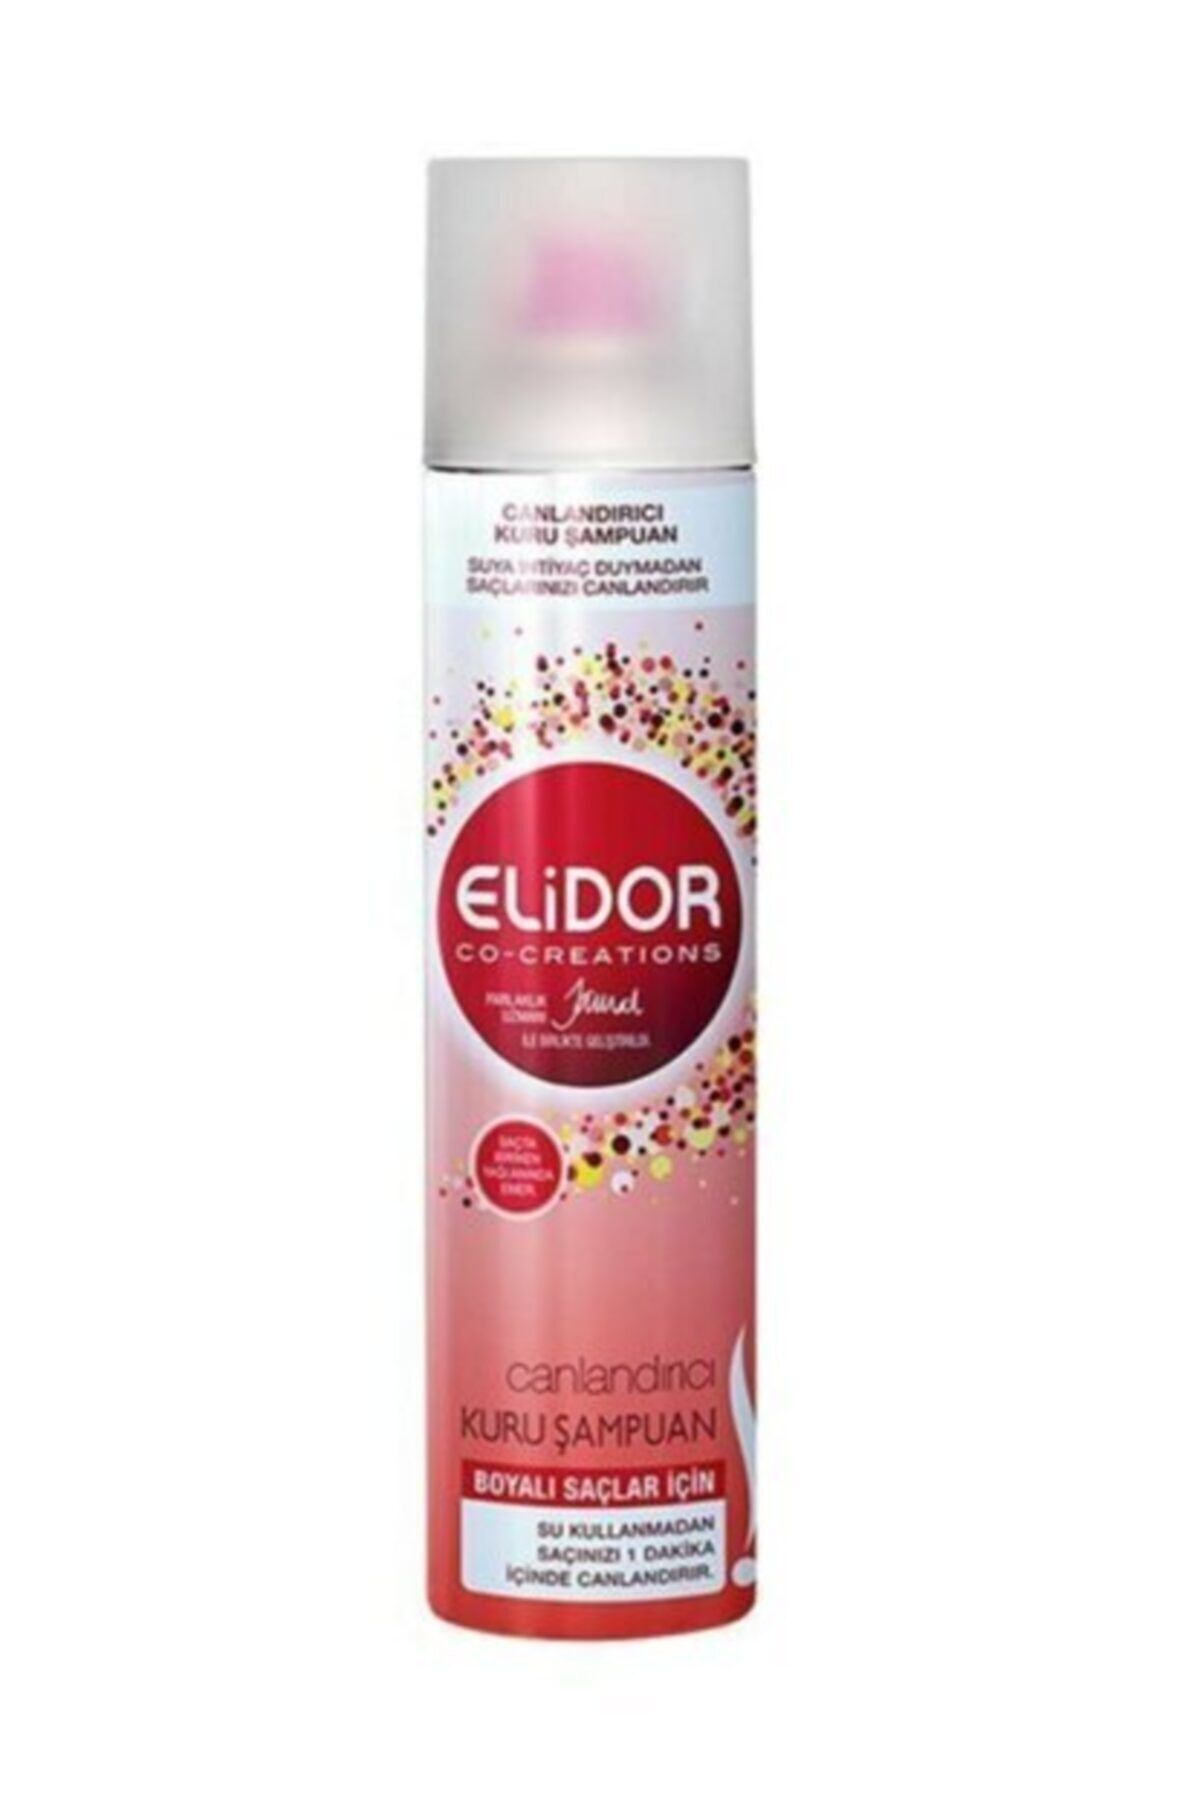 Elidor Canlandırıcı Boyalı Saçlar İçin Şampuan 200 ml